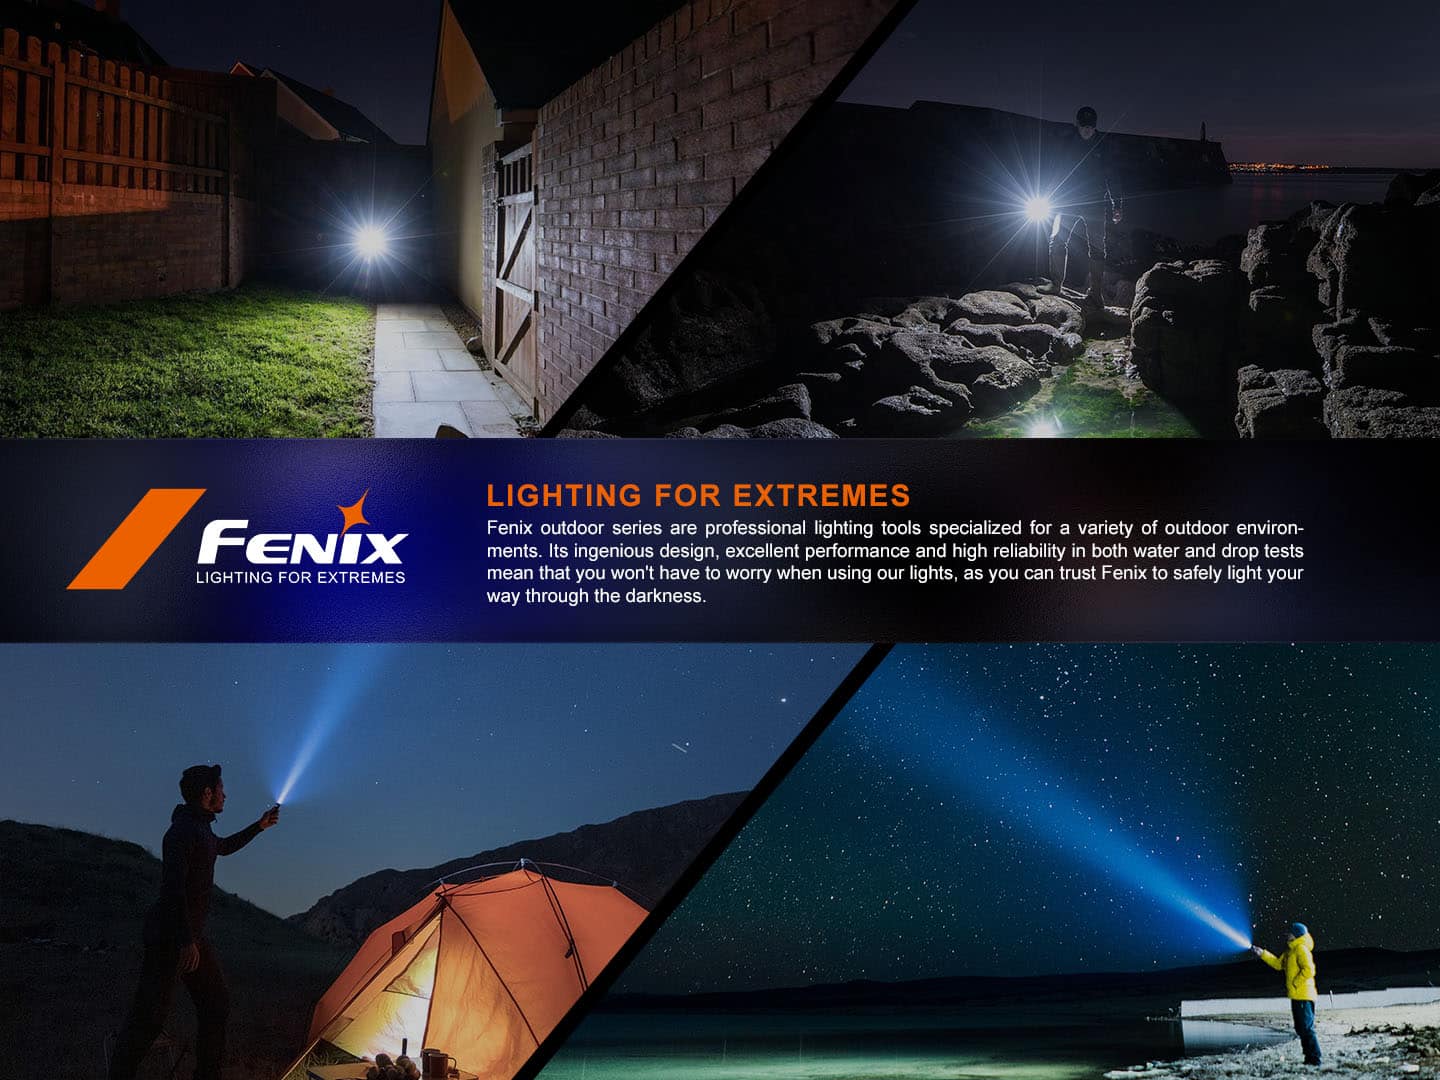 Fenix LD30R - 1700 lumens - ultra compact et légère – Revendeur Officiel Lampes  FENIX depuis 2008